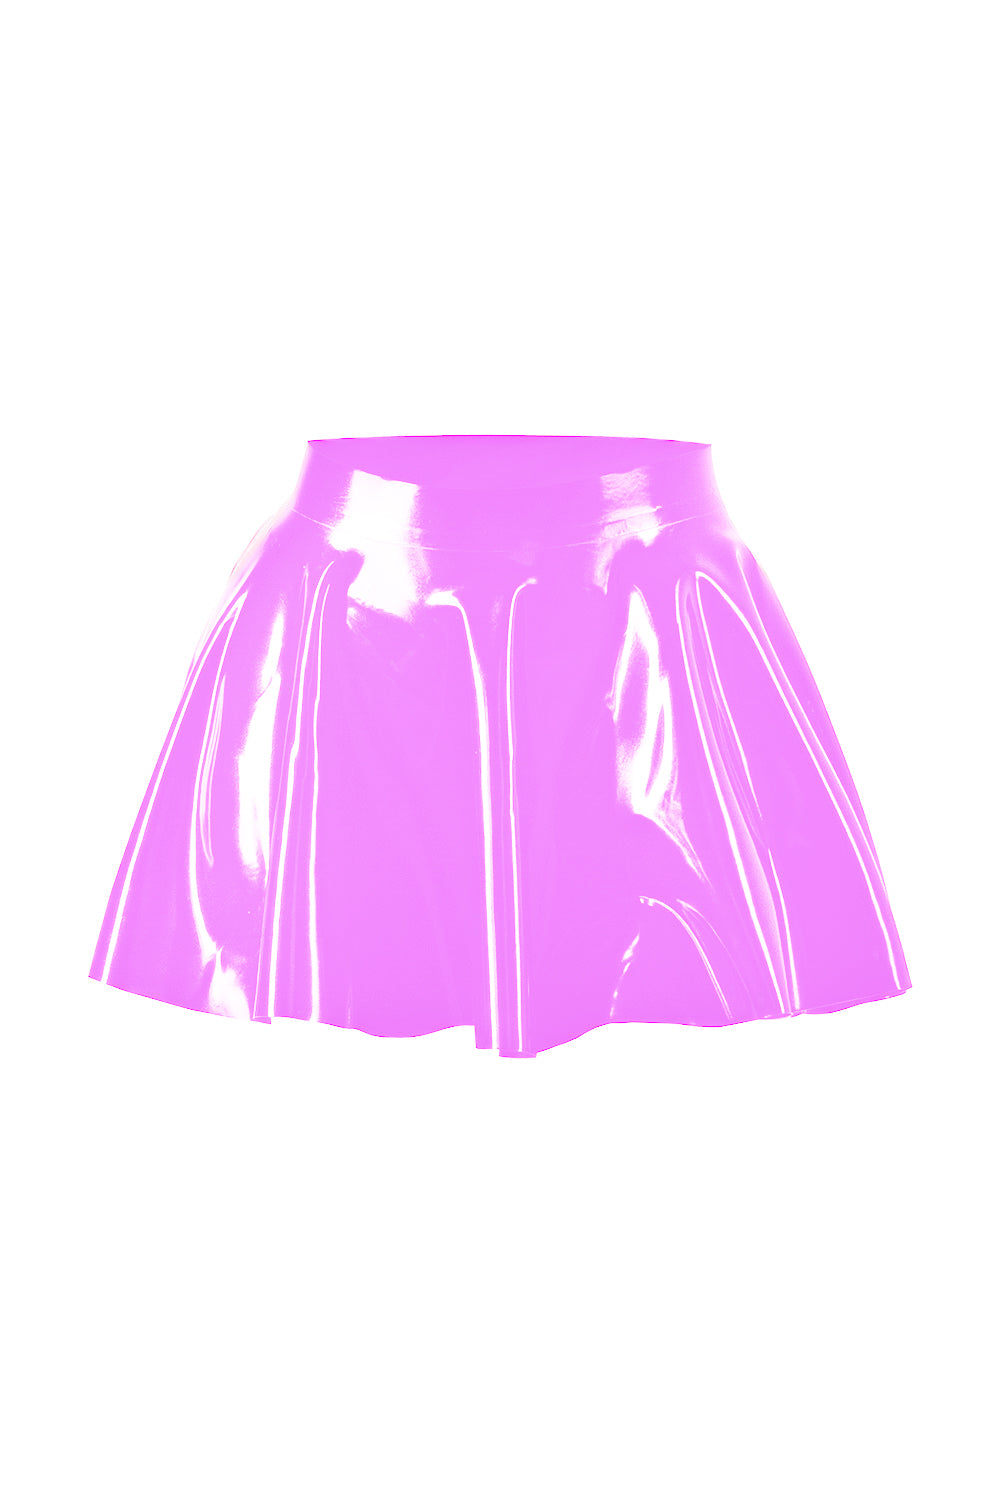 Latex Skater Skirt. Pink